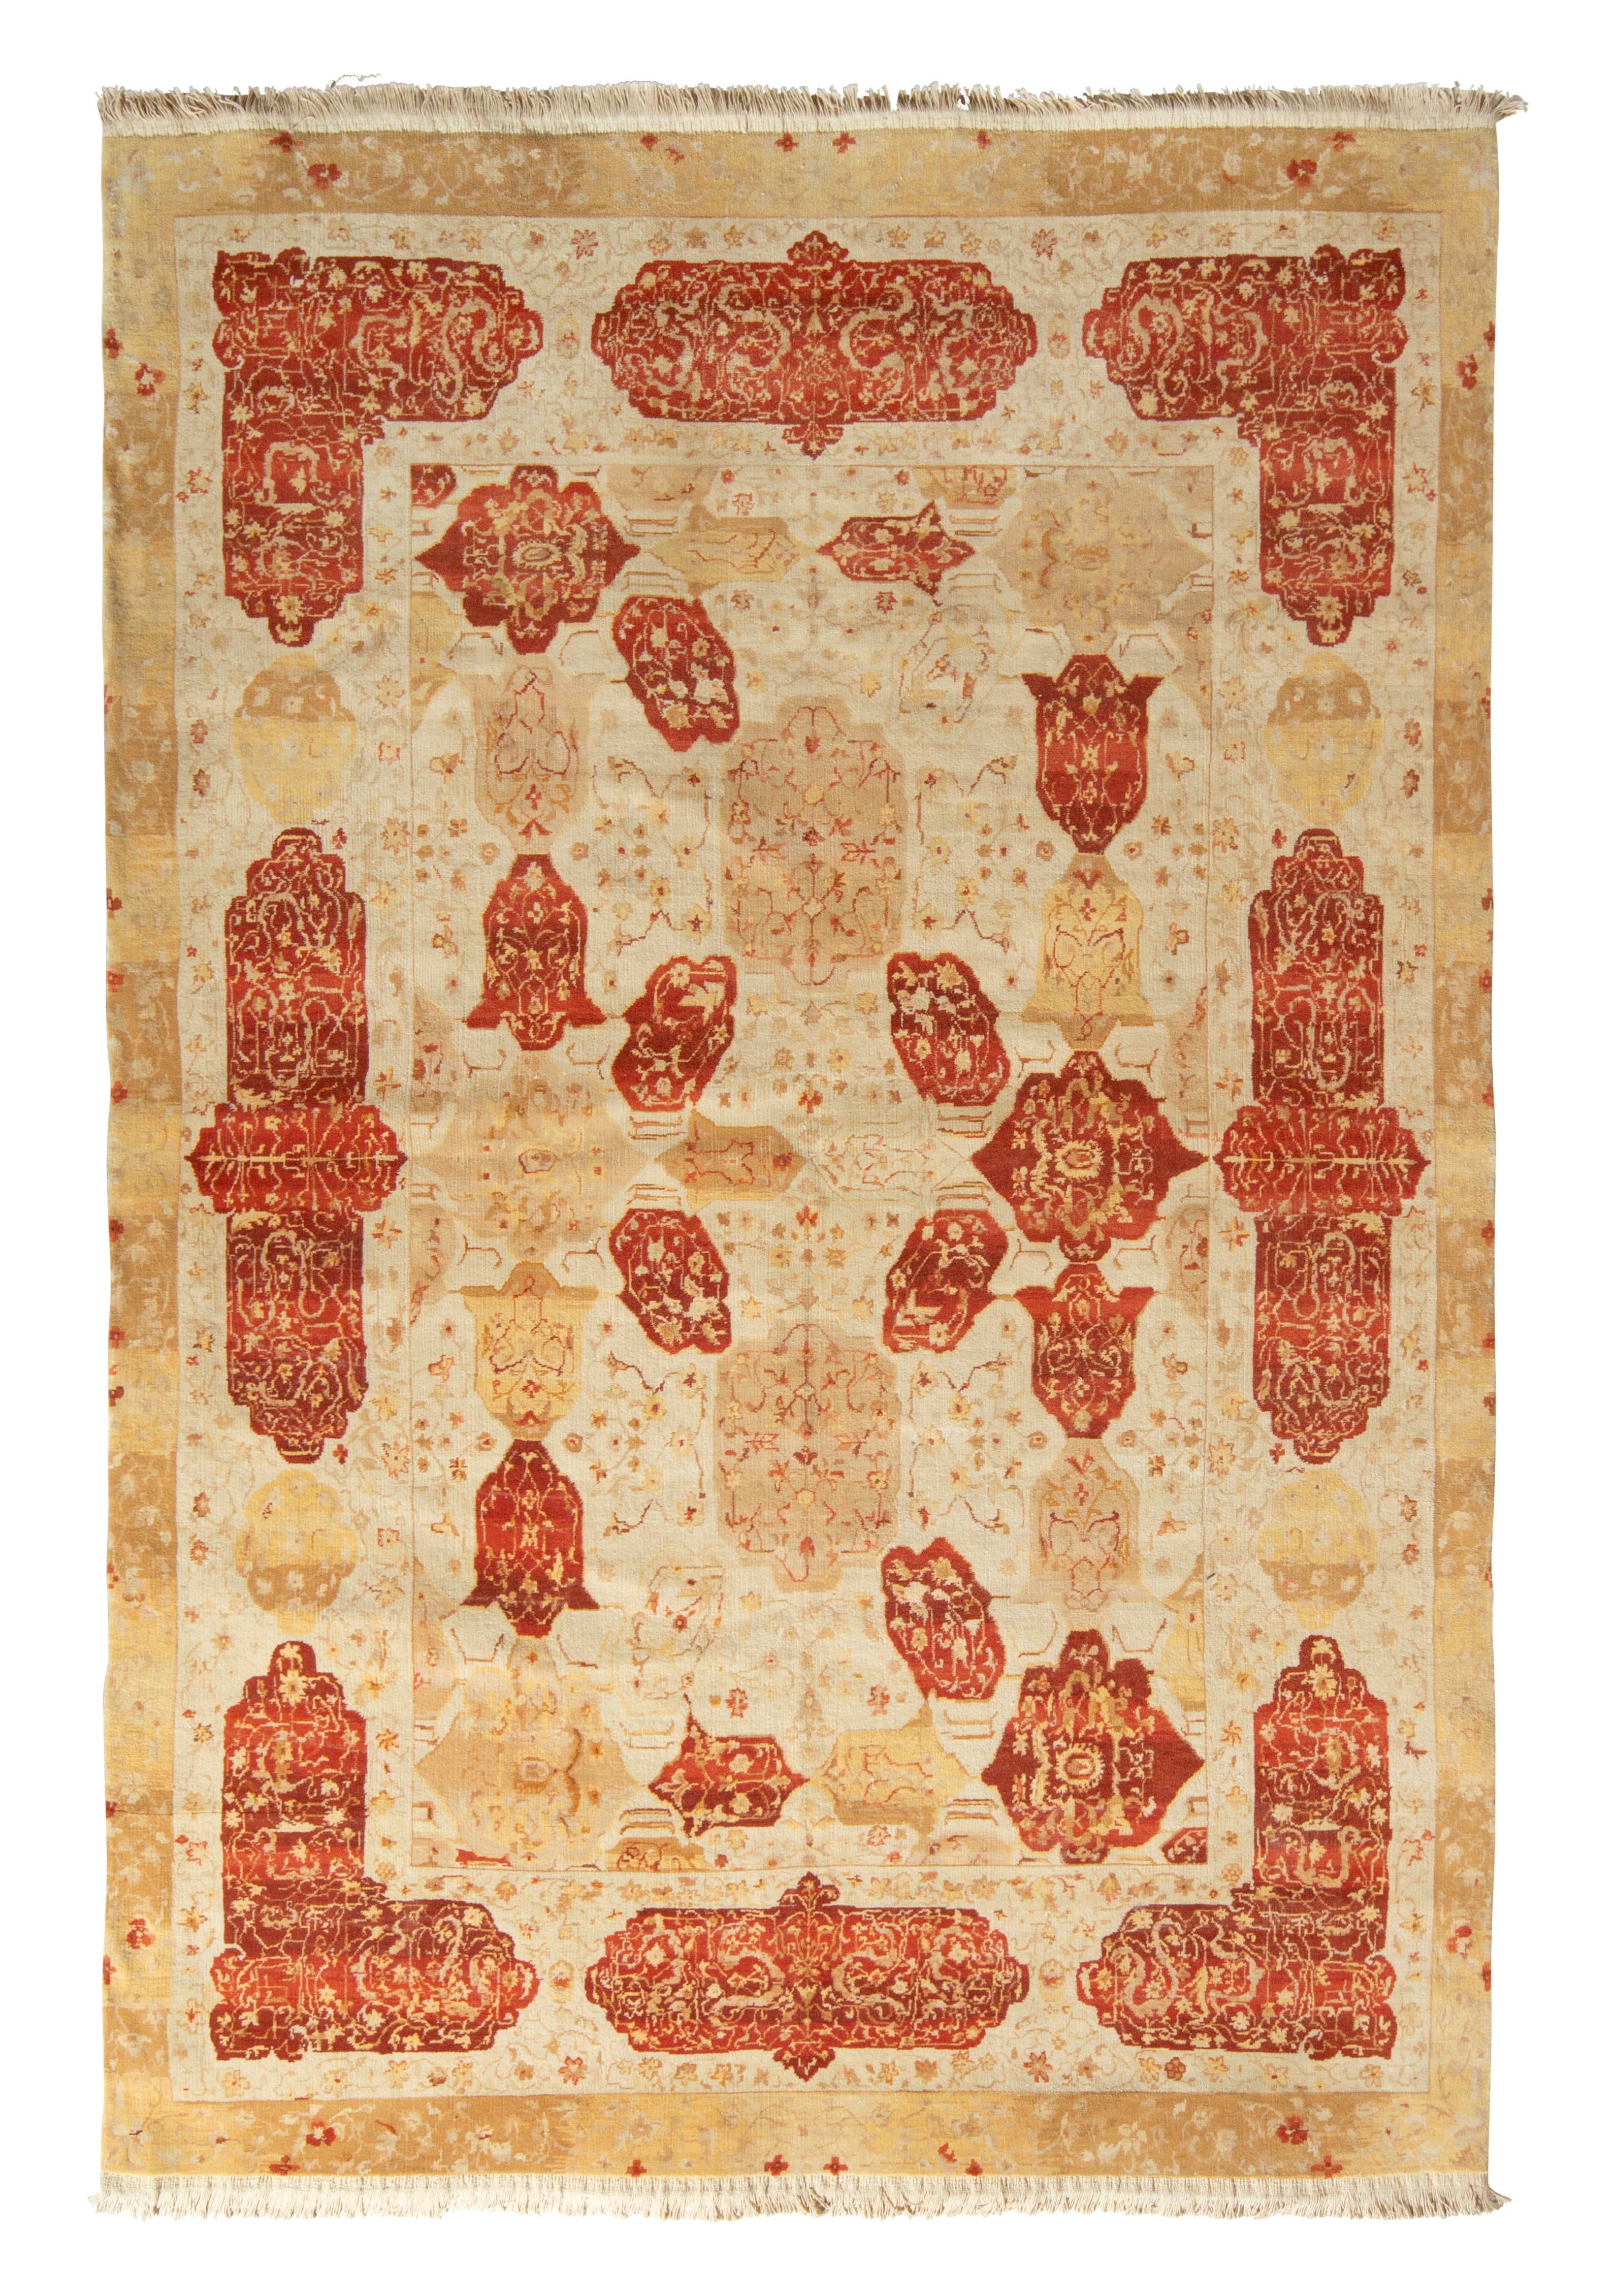 Klassischer Agra-Teppich von Rug & Kilim in Beige-Braun und roten Blumenkartuschen